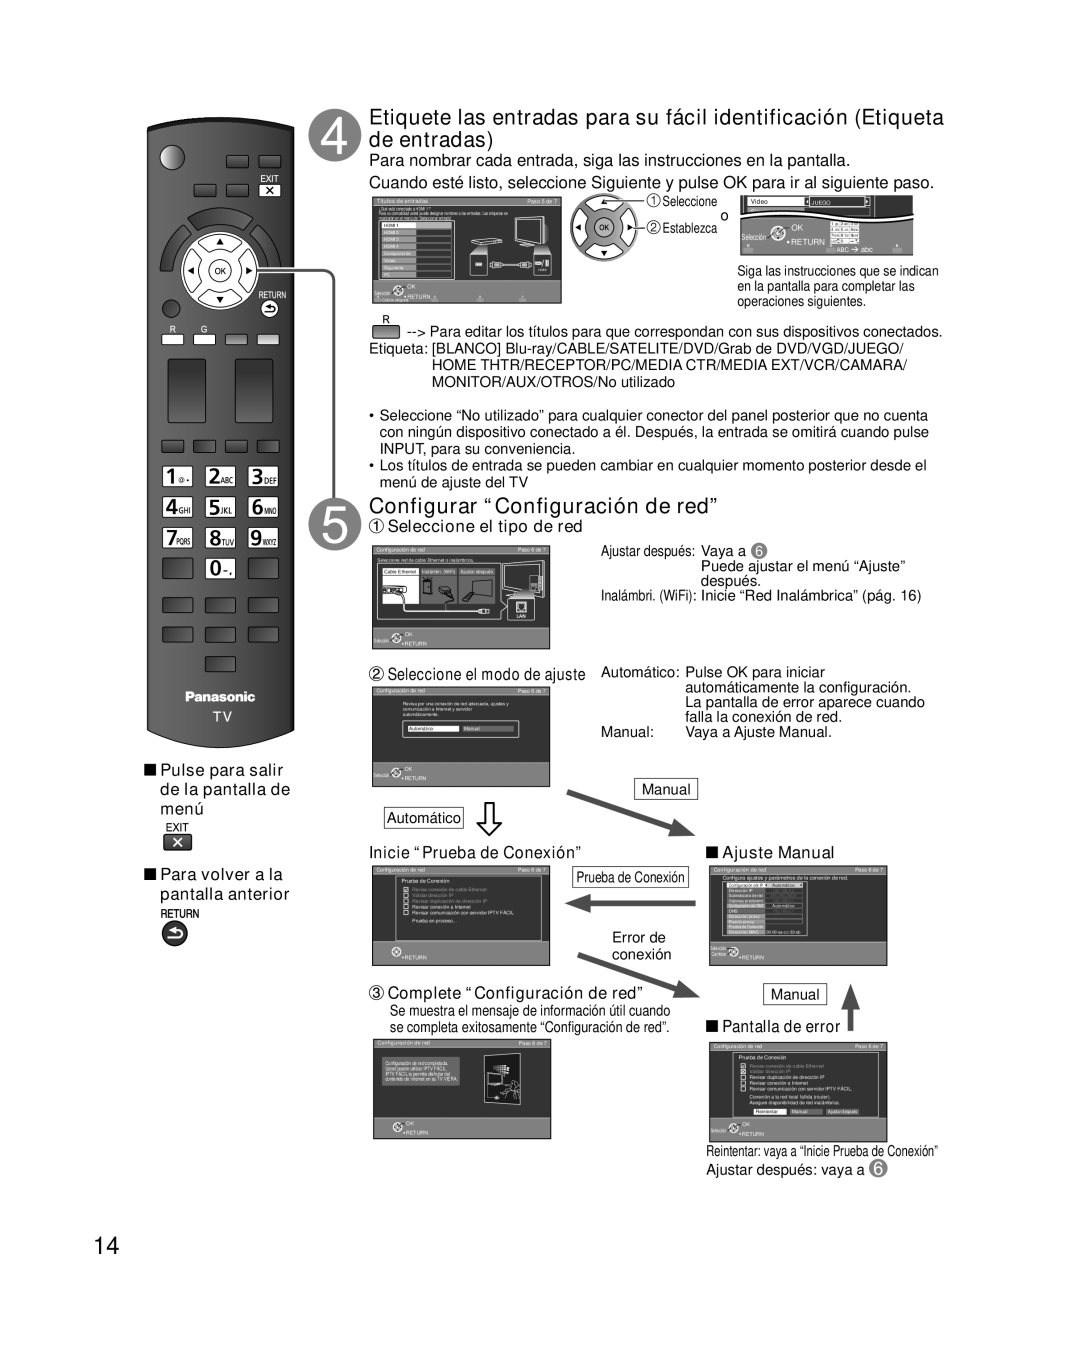 Panasonic TC-L42E30 Configurar “Configuración de red”, Para nombrar cada entrada, siga las instrucciones en la pantalla 